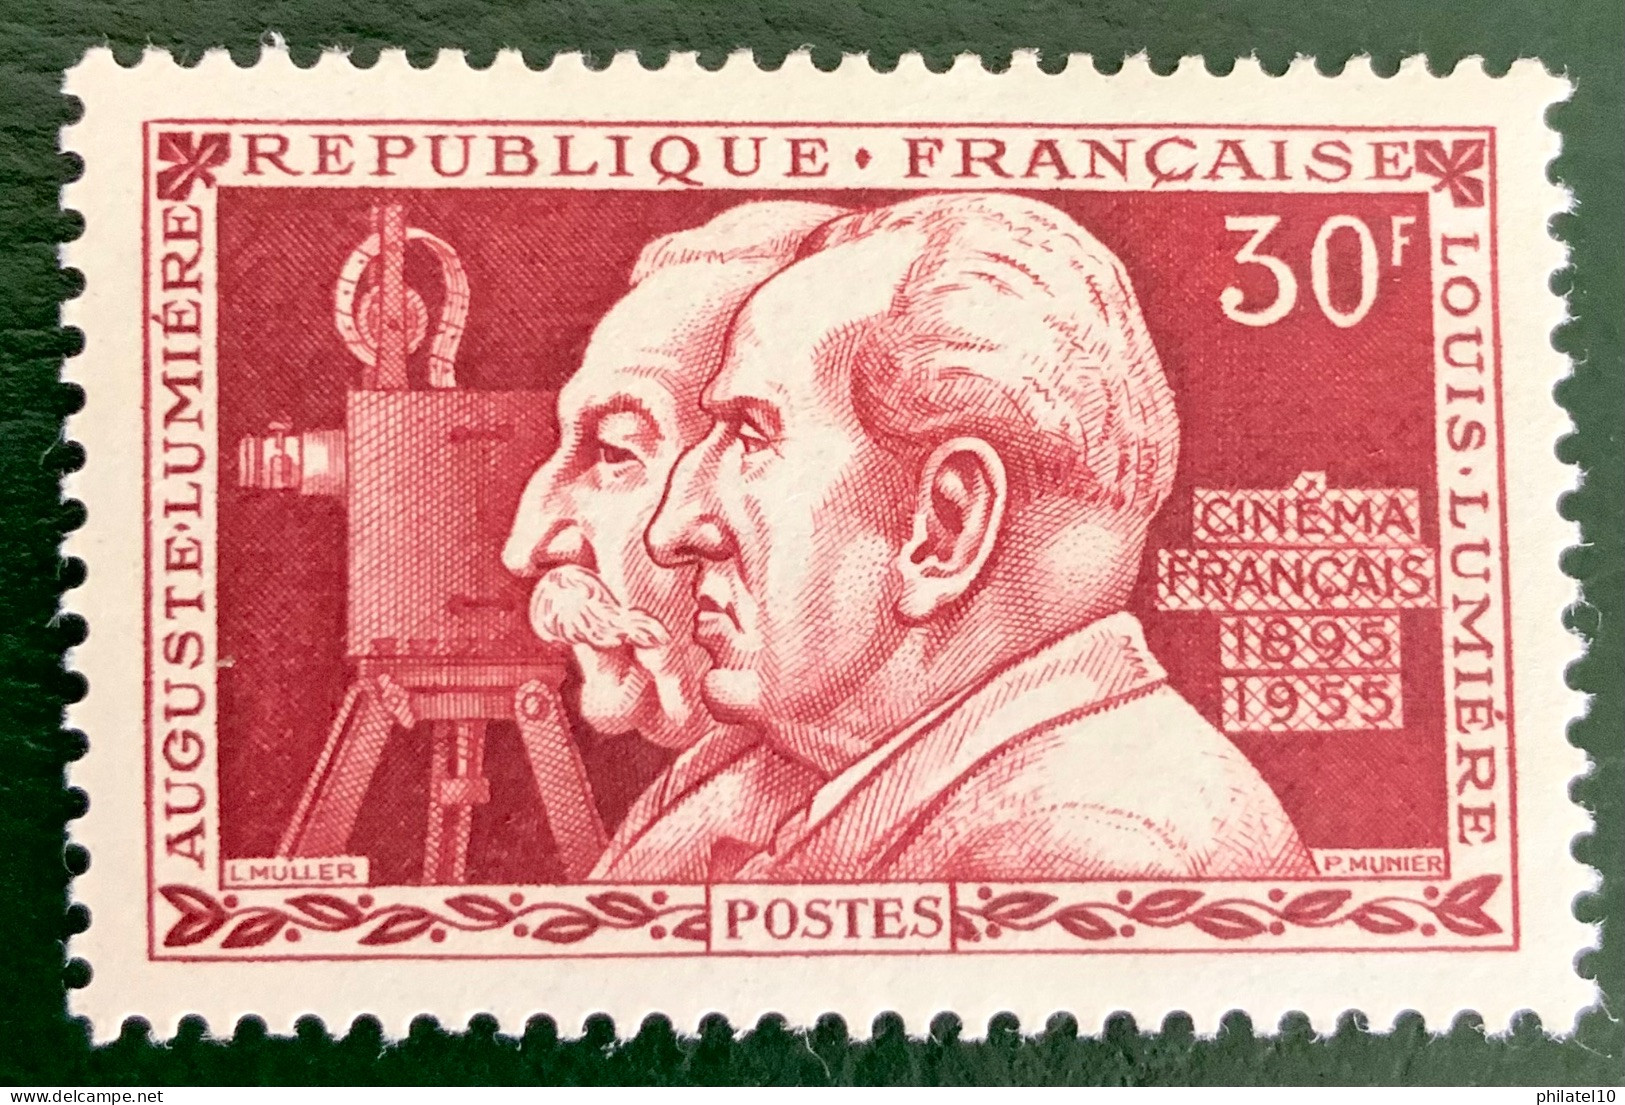 1955 FRANCE N 1033 - AUGUSTE LUMIÈRE ET LOUIS LUMIÈRE CINQUANTENAIRE DU CINÉMA - NEUF** - Unused Stamps